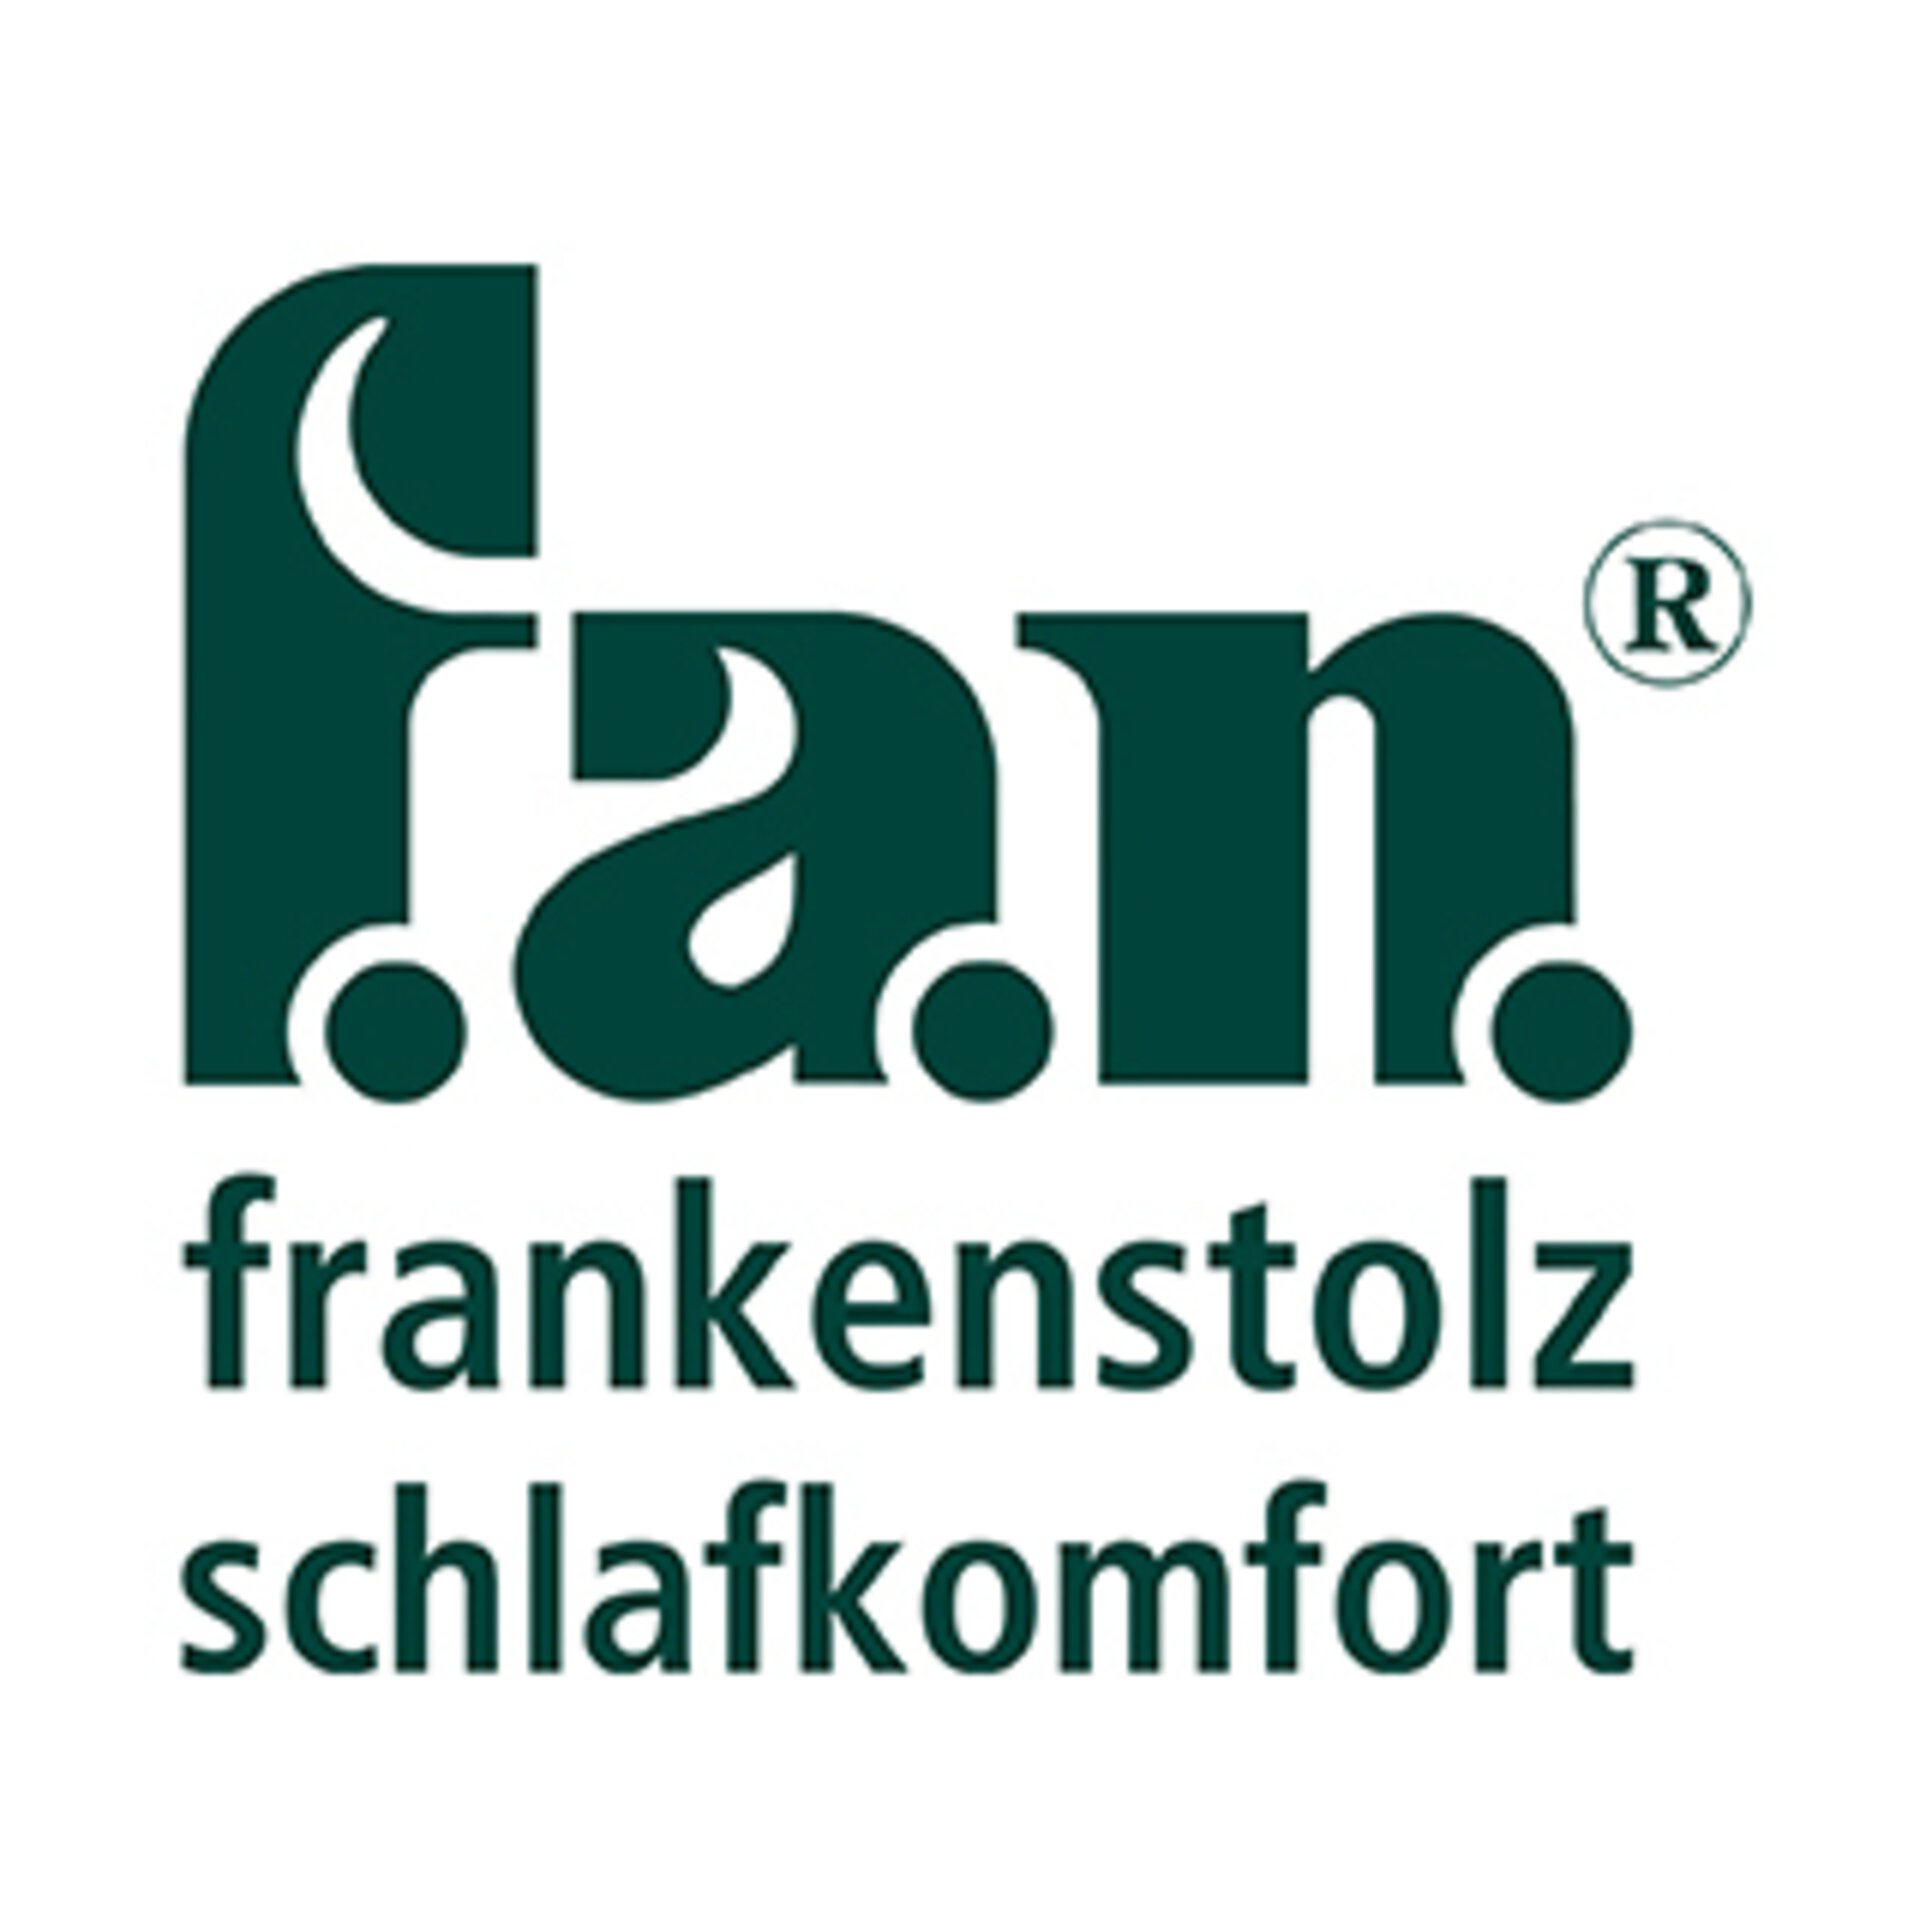 "f.a.n. - frankenstolz schlafkomfort" Logo